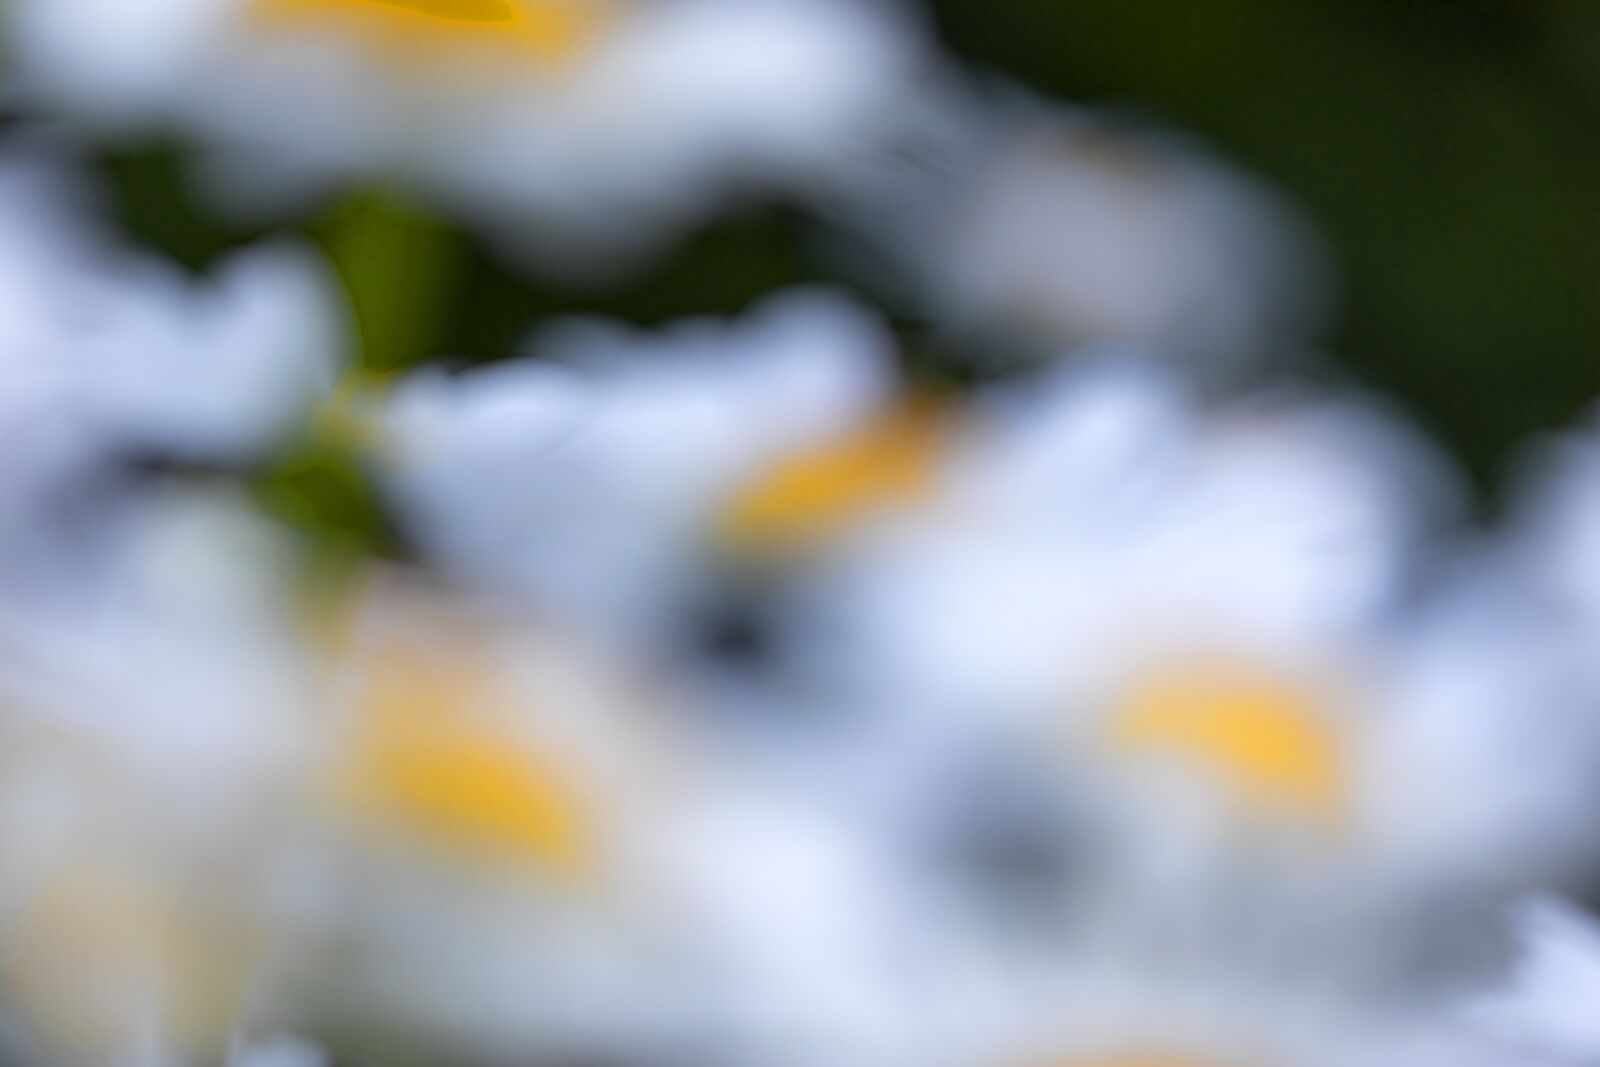 Canon EOS 5D Mark IV sample photo. Flower, daisy, plant photography